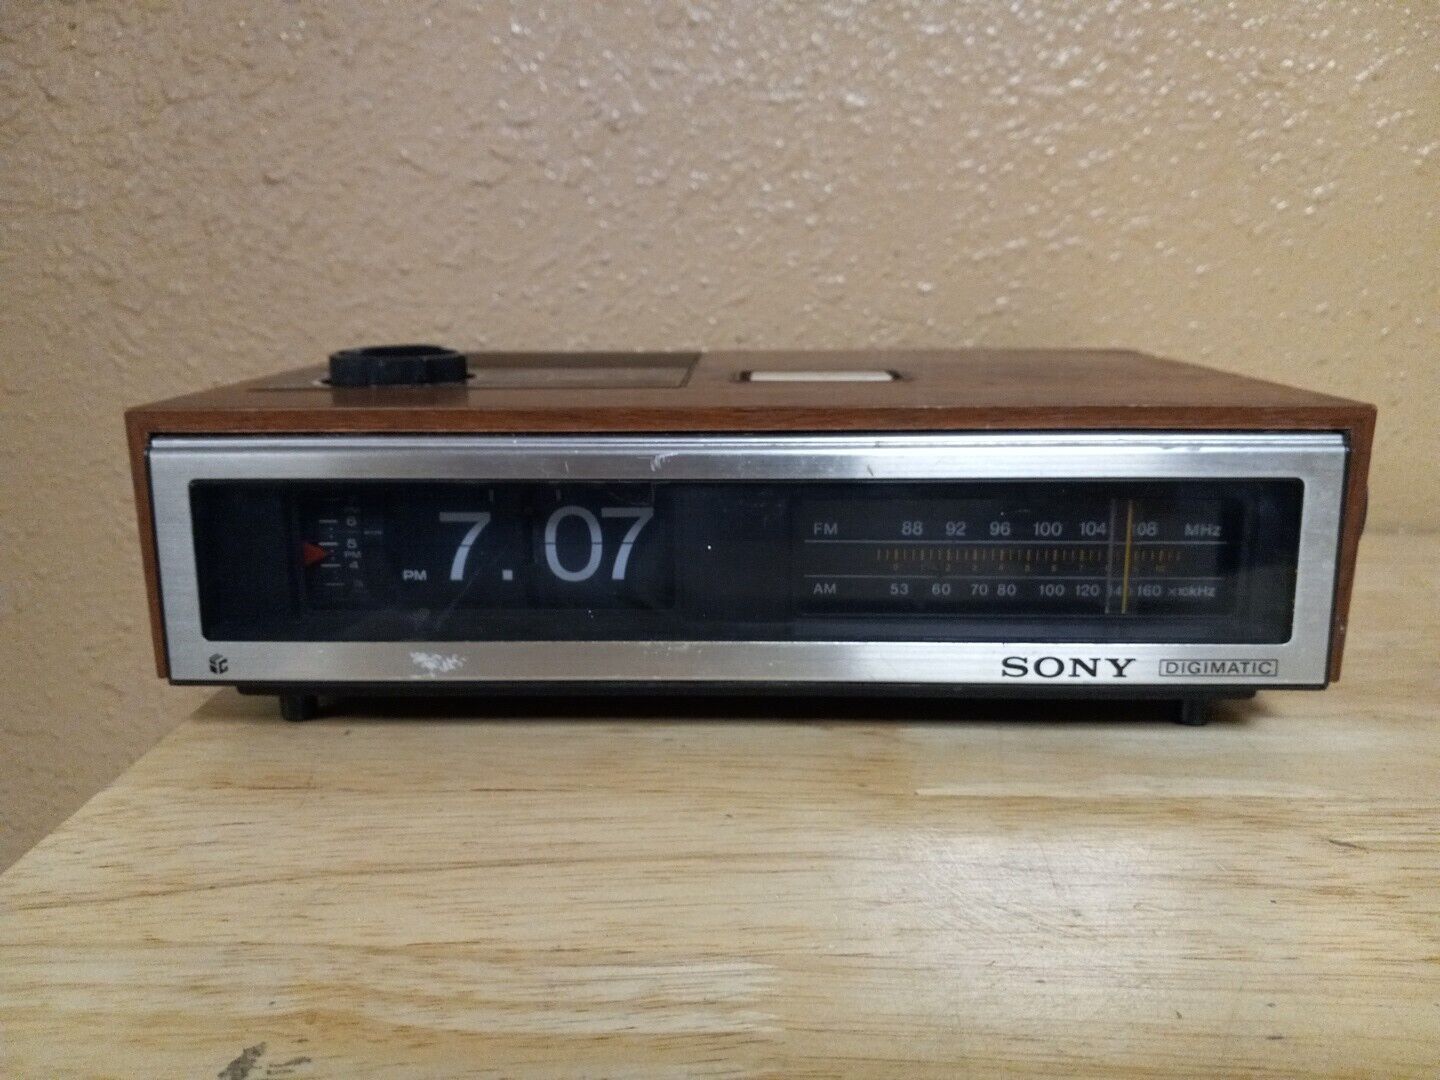 Vintage Sony ICF-C670W Digimatic AM FM Flip Alarm Clock Radio Tested Working 